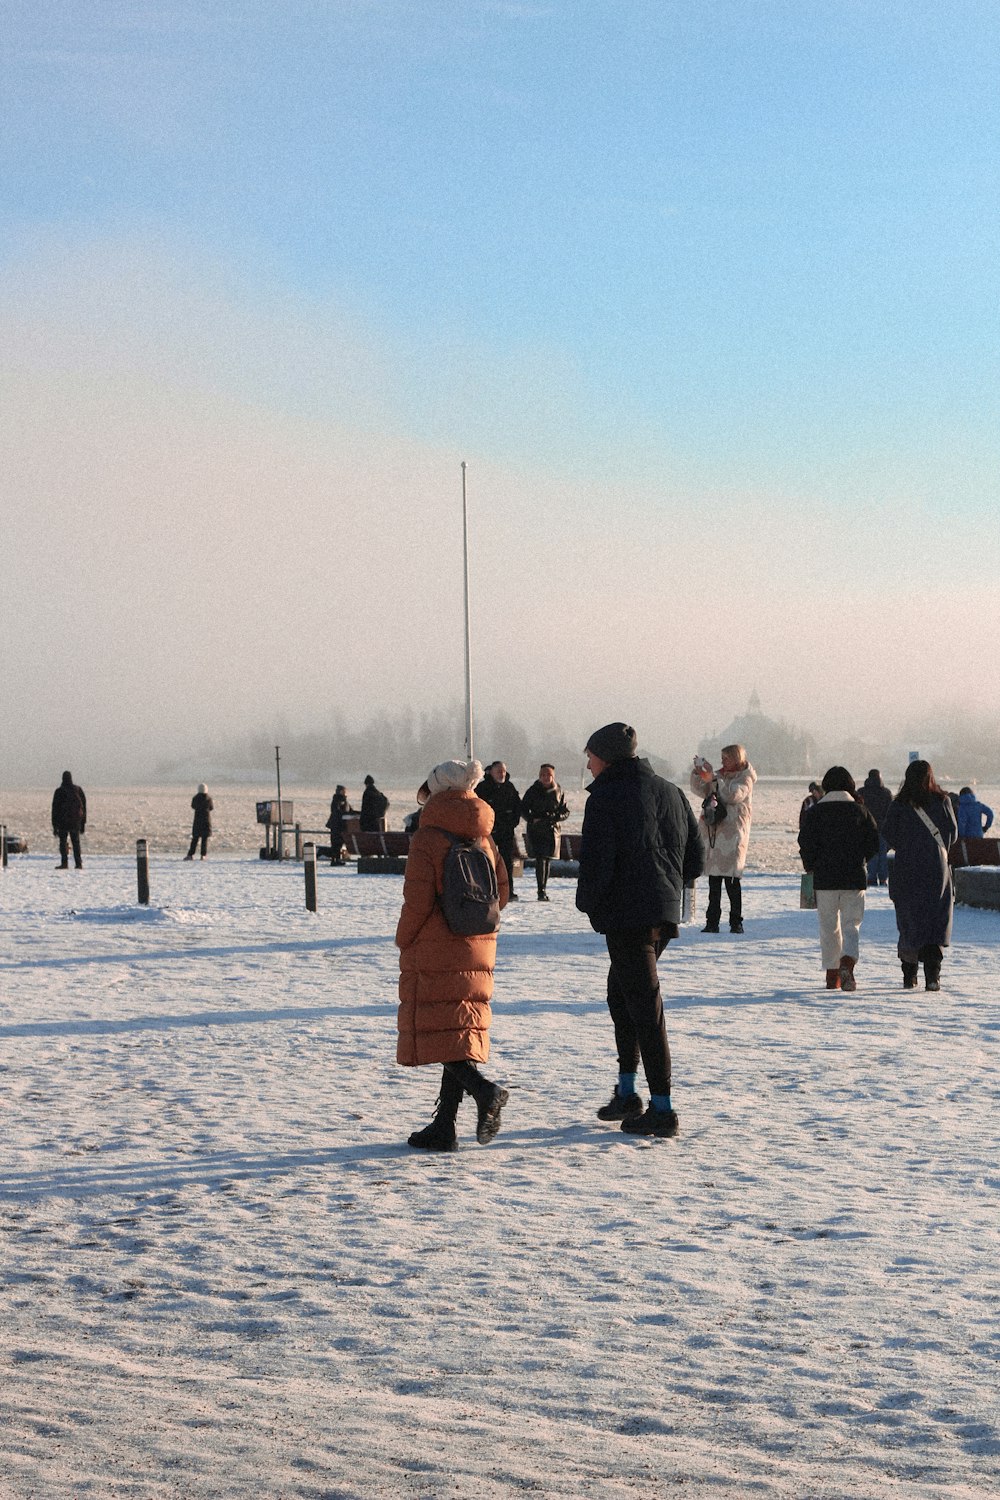 Eine Gruppe von Menschen, die auf einem schneebedeckten Feld stehen